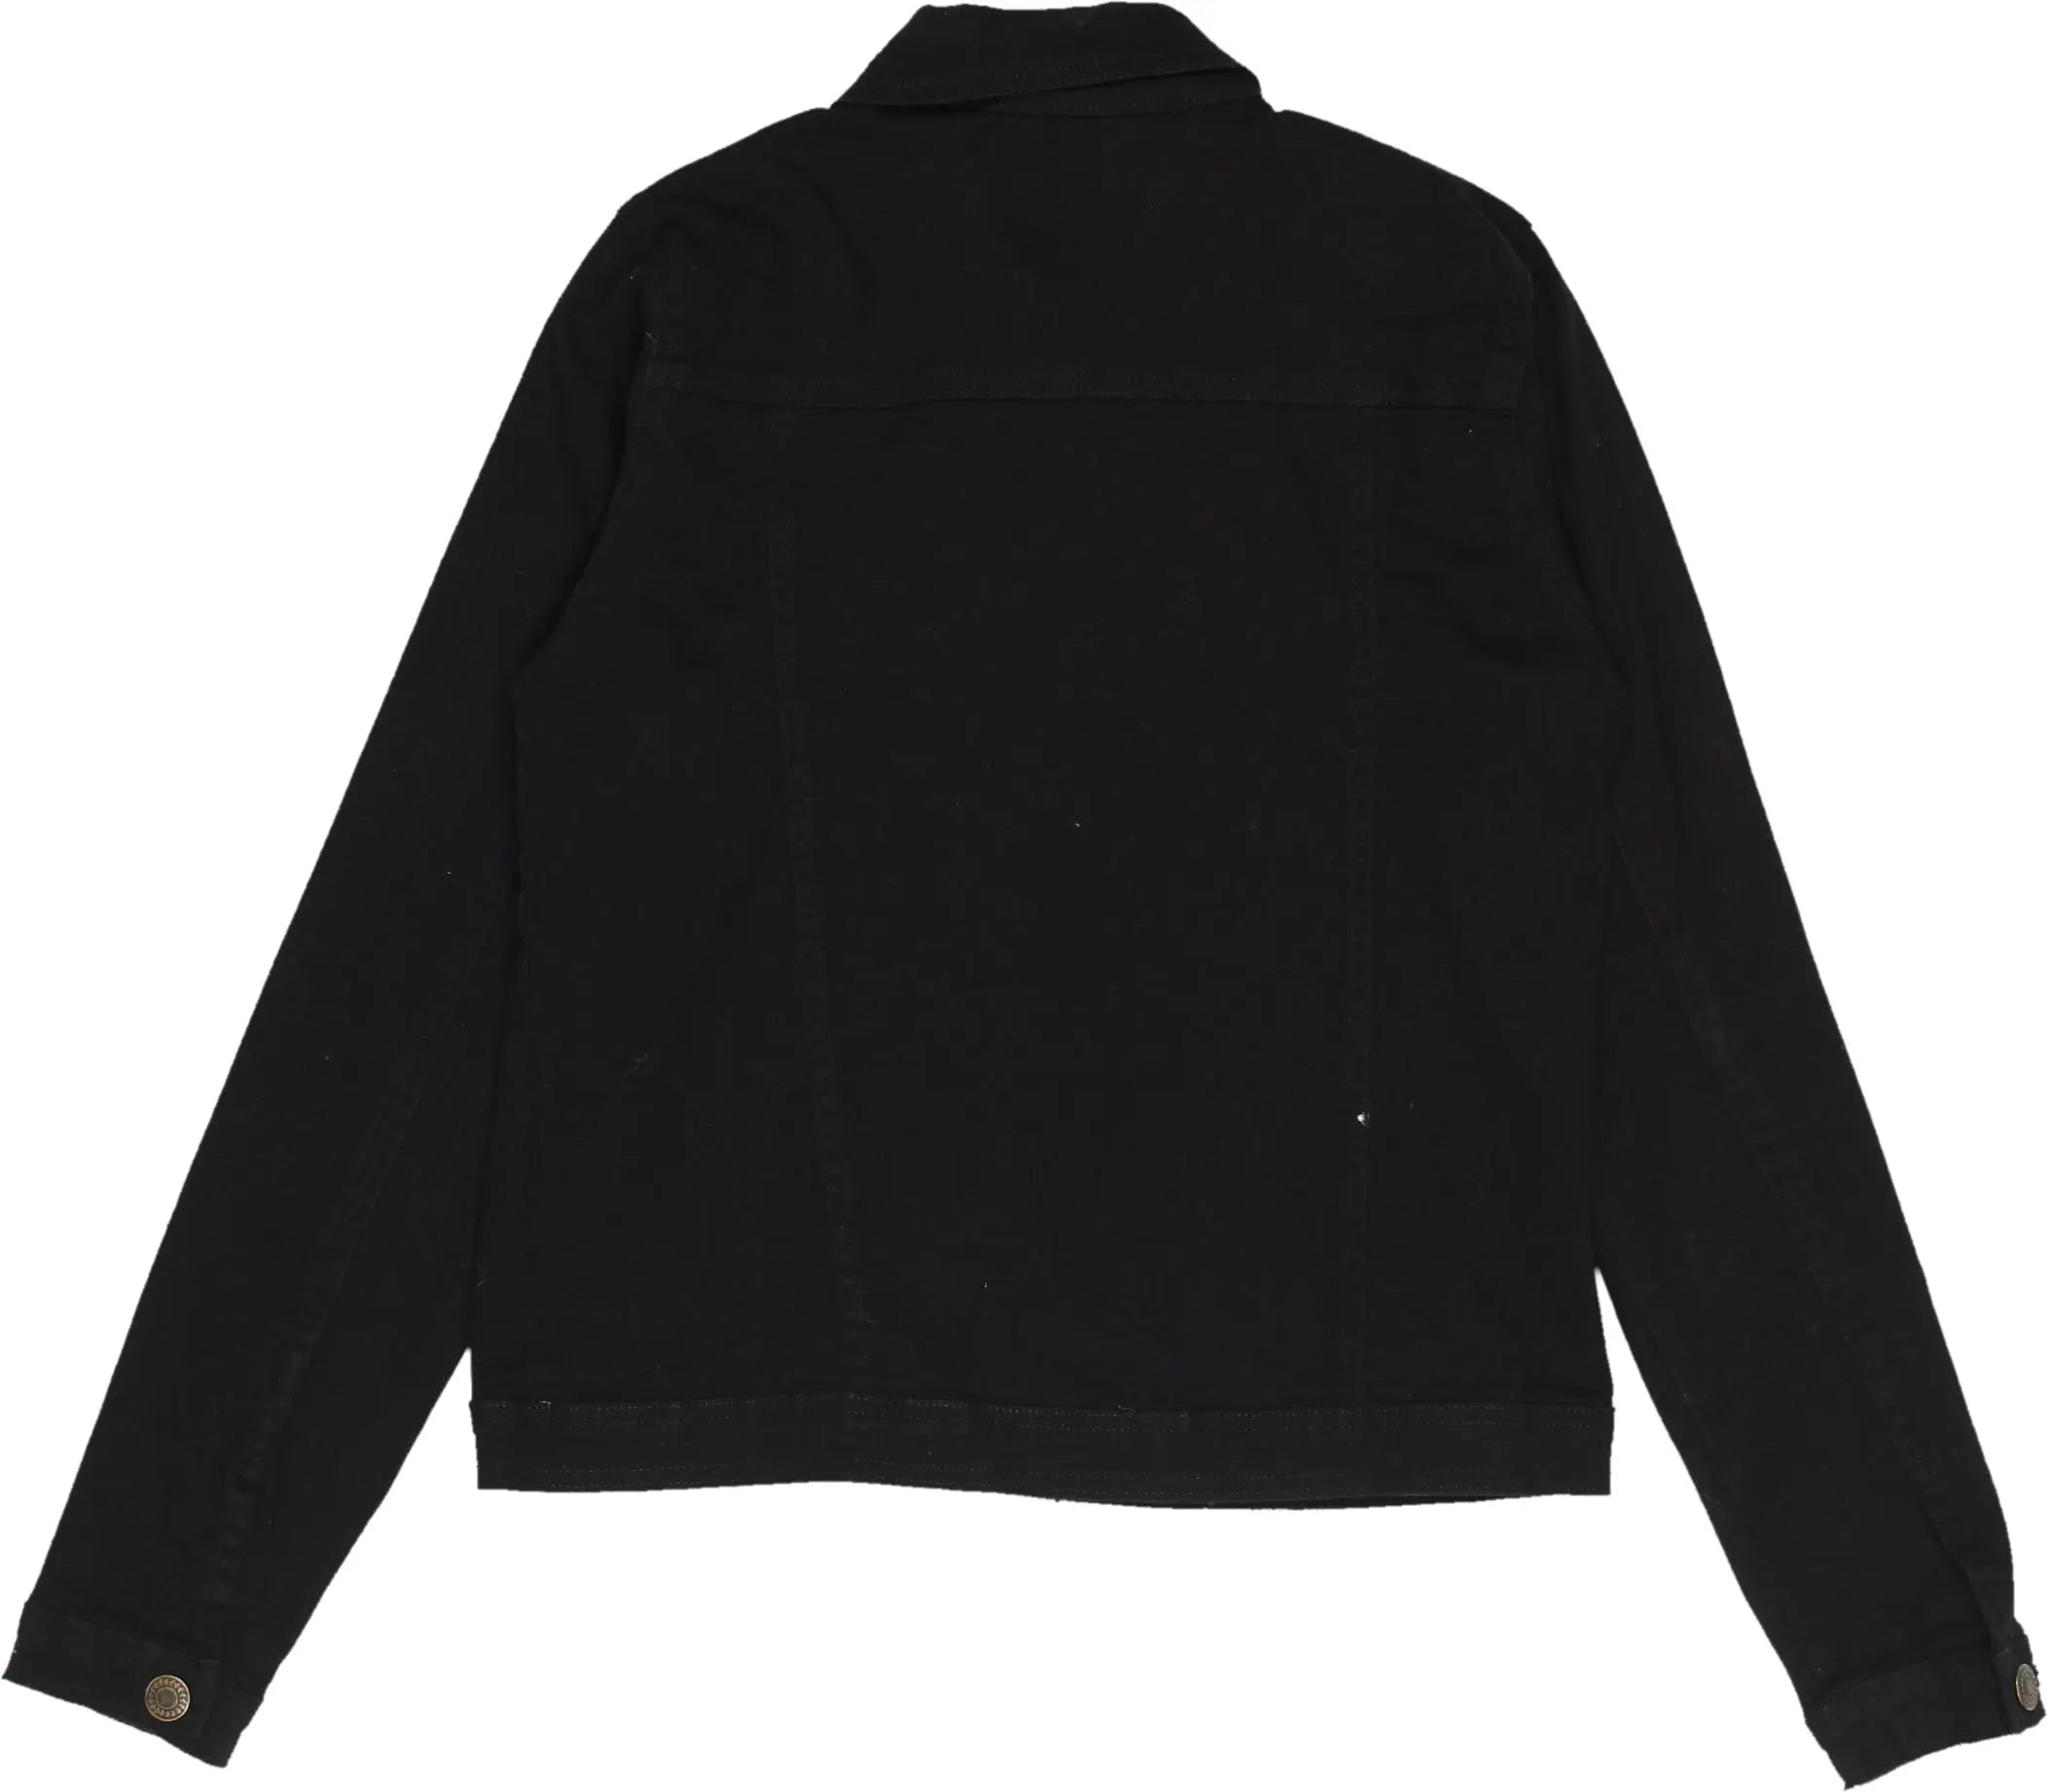 True Spirit - Black Denim Jacket- ThriftTale.com - Vintage and second handclothing